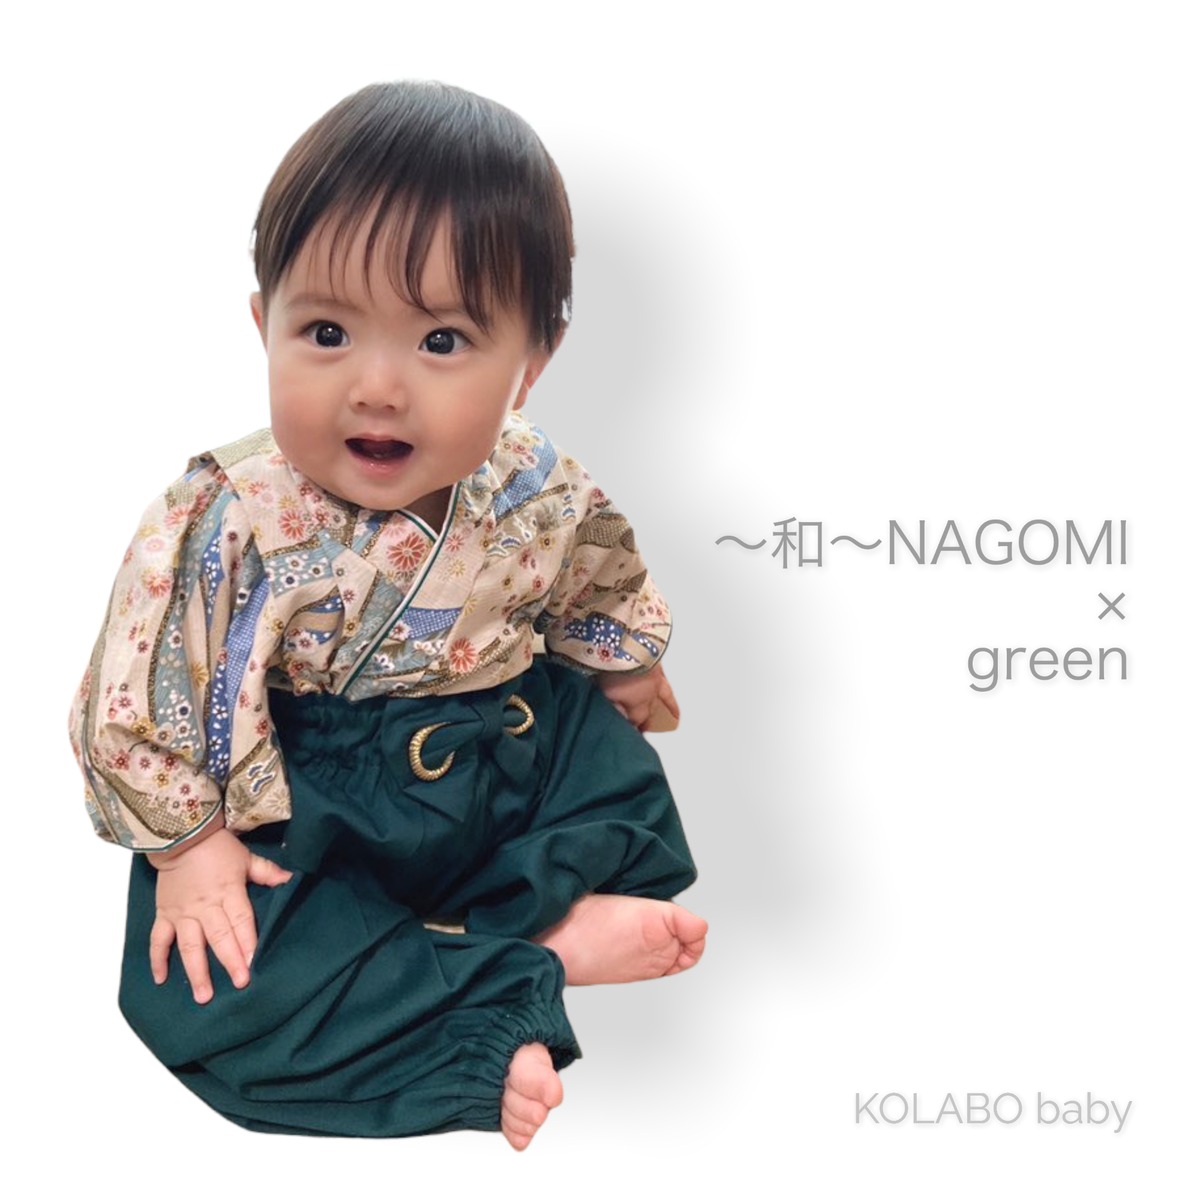 〜和〜 NAGOMI ベビー袴 | KOLABO baby コラボベビー